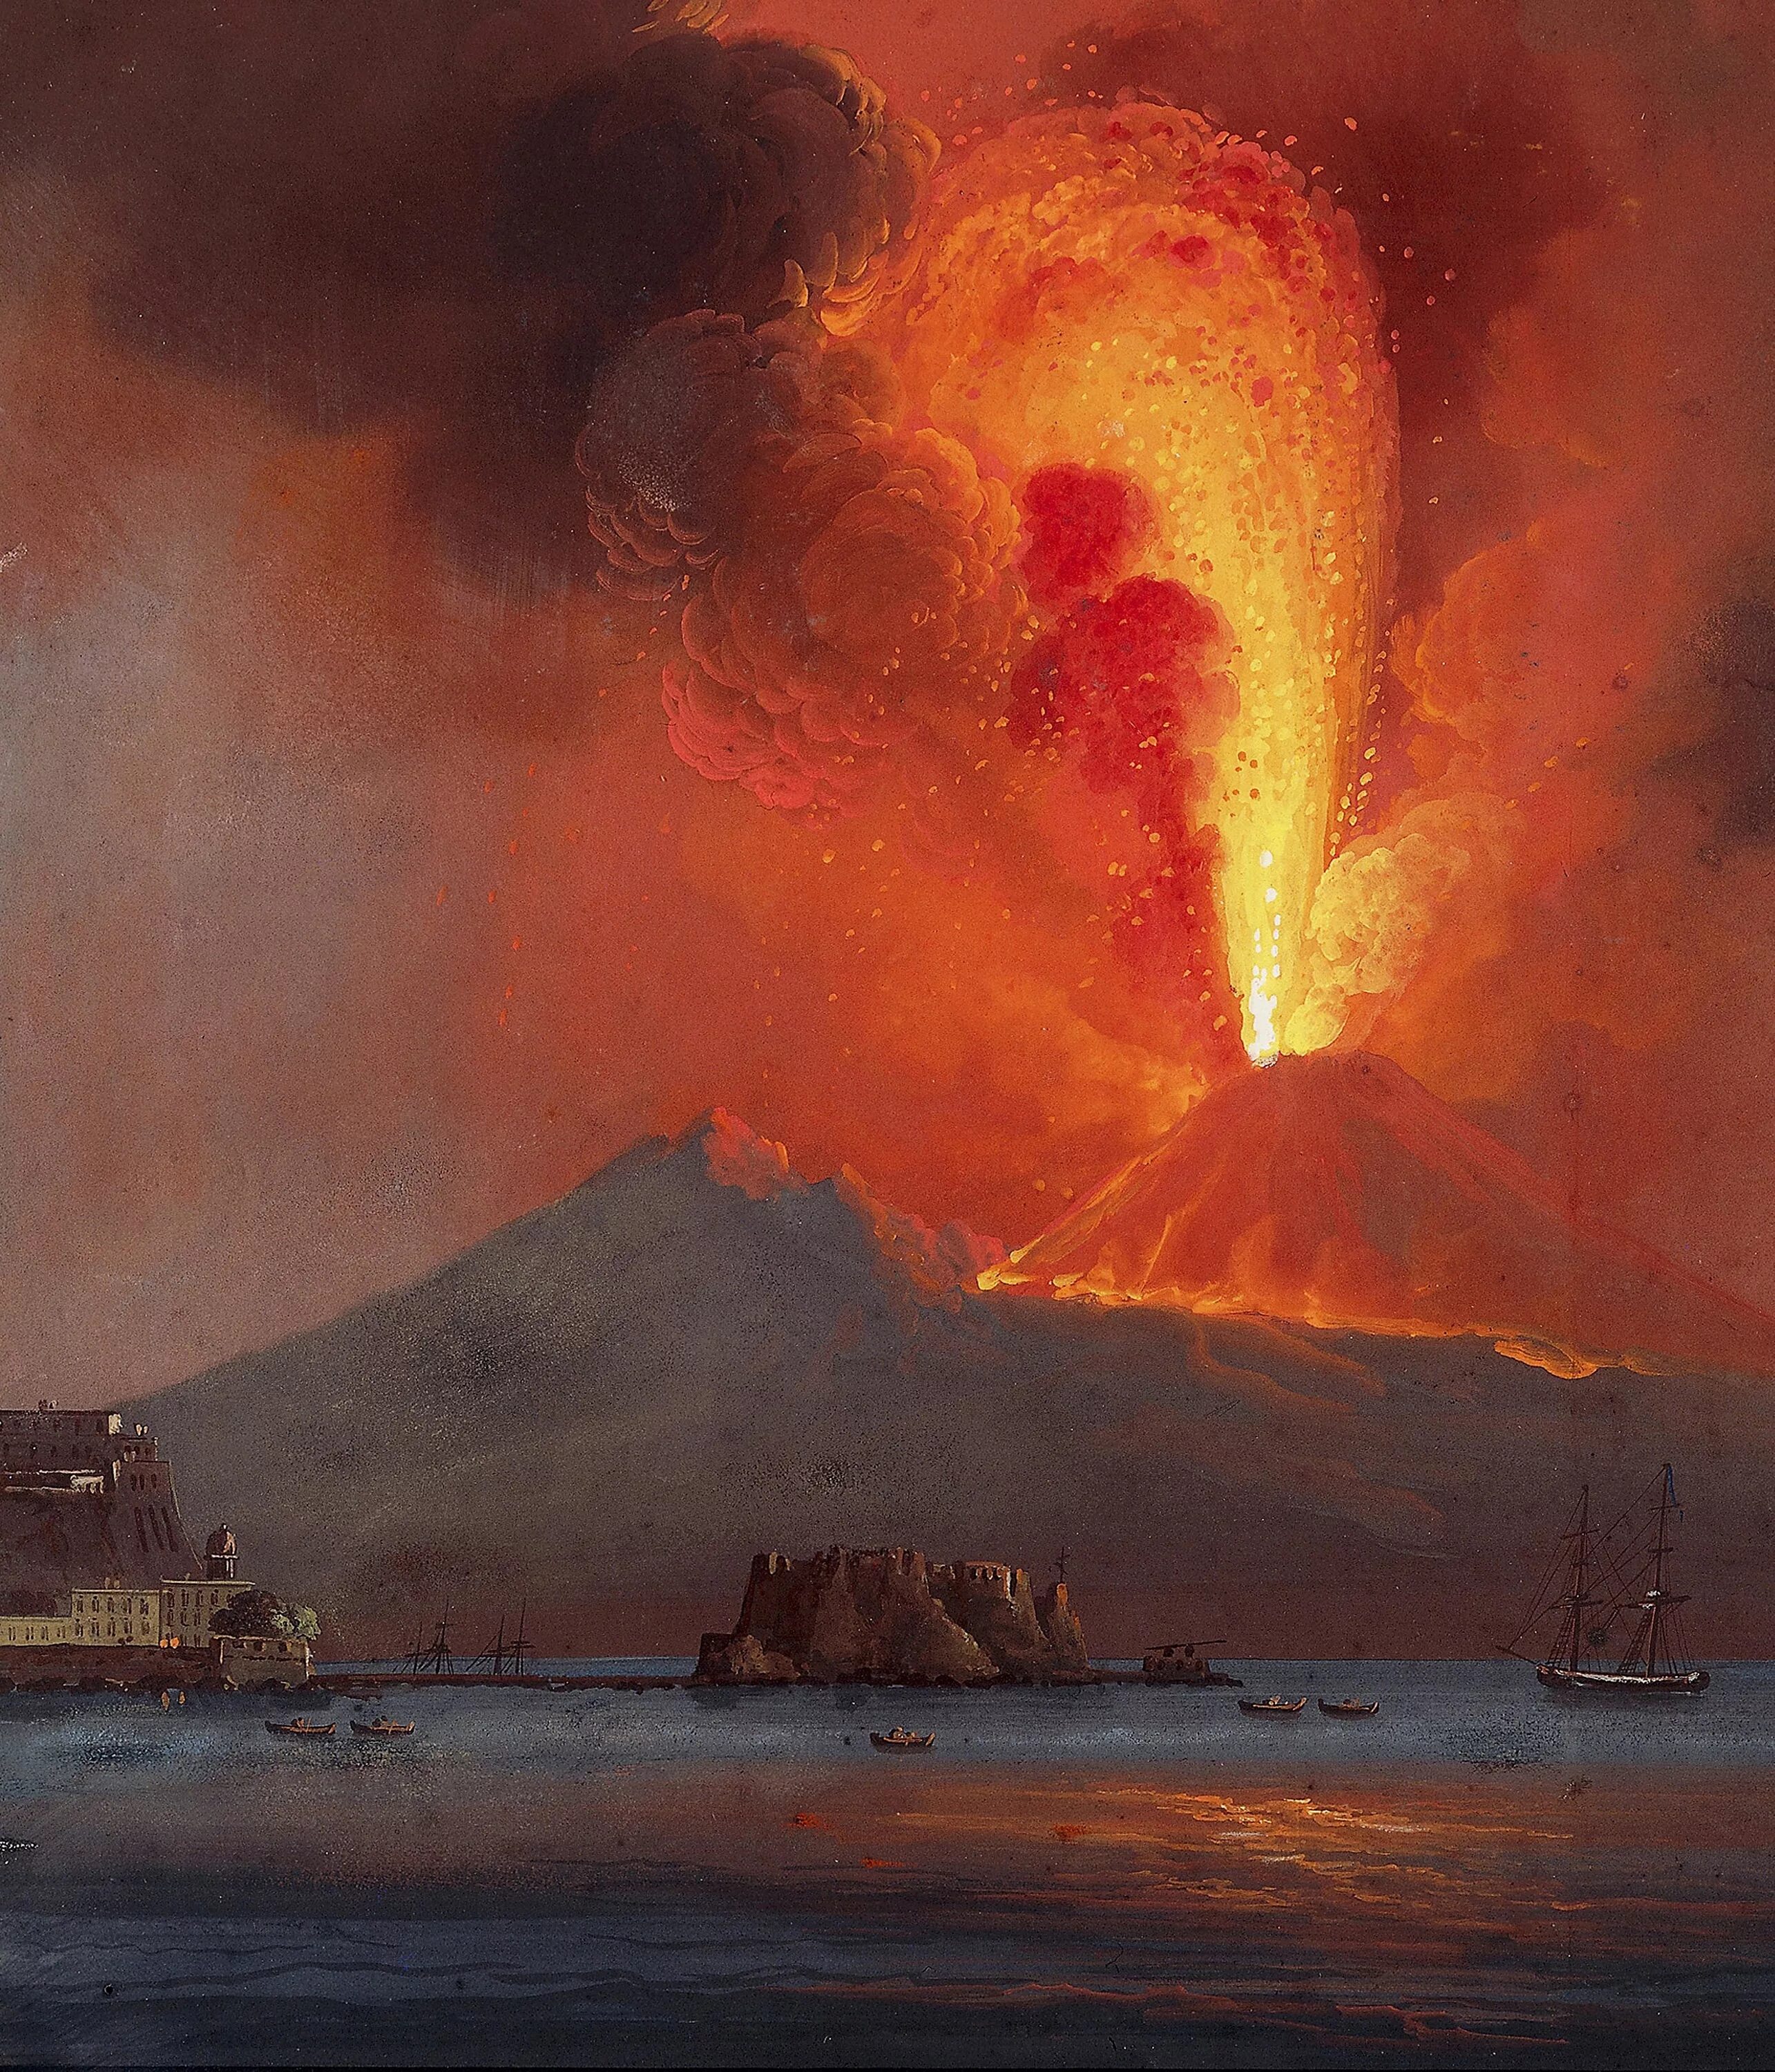 Извержение вулкана Везувий гибель Помпеи. Извержение Везувия гибель Помпеи. Картина извержение вулкана Везувий гибель Помпеи. Извержение вулкана уничтожило город